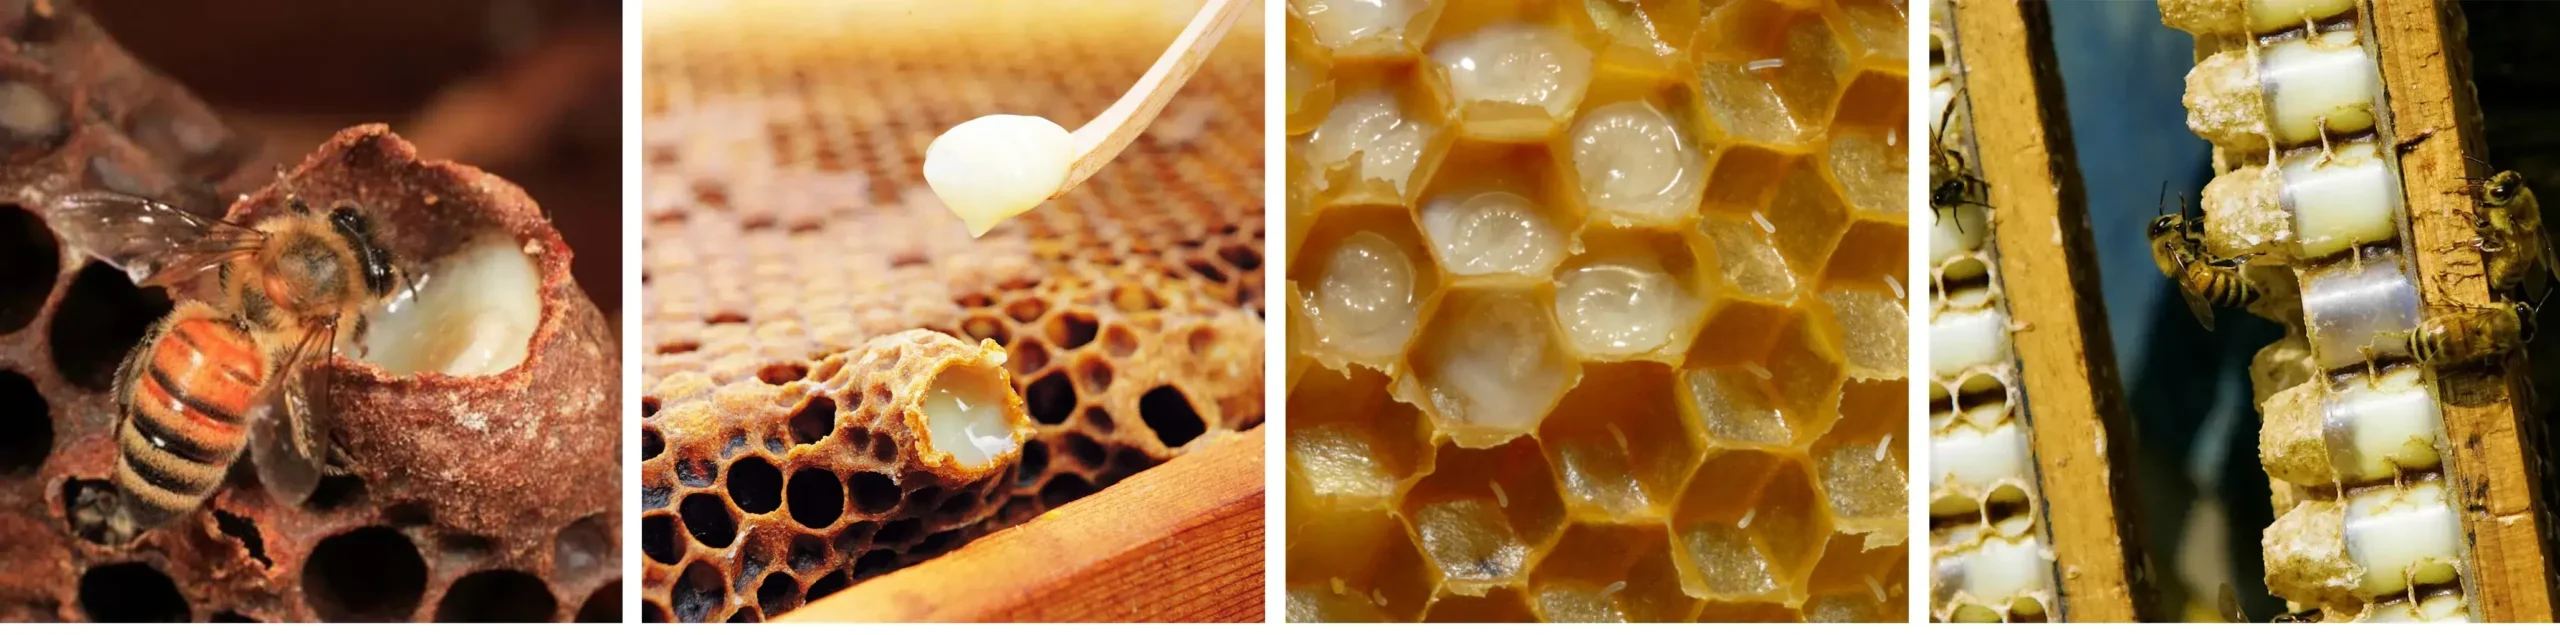 ژله رویال زنبور عسل- خرید ژل رویال